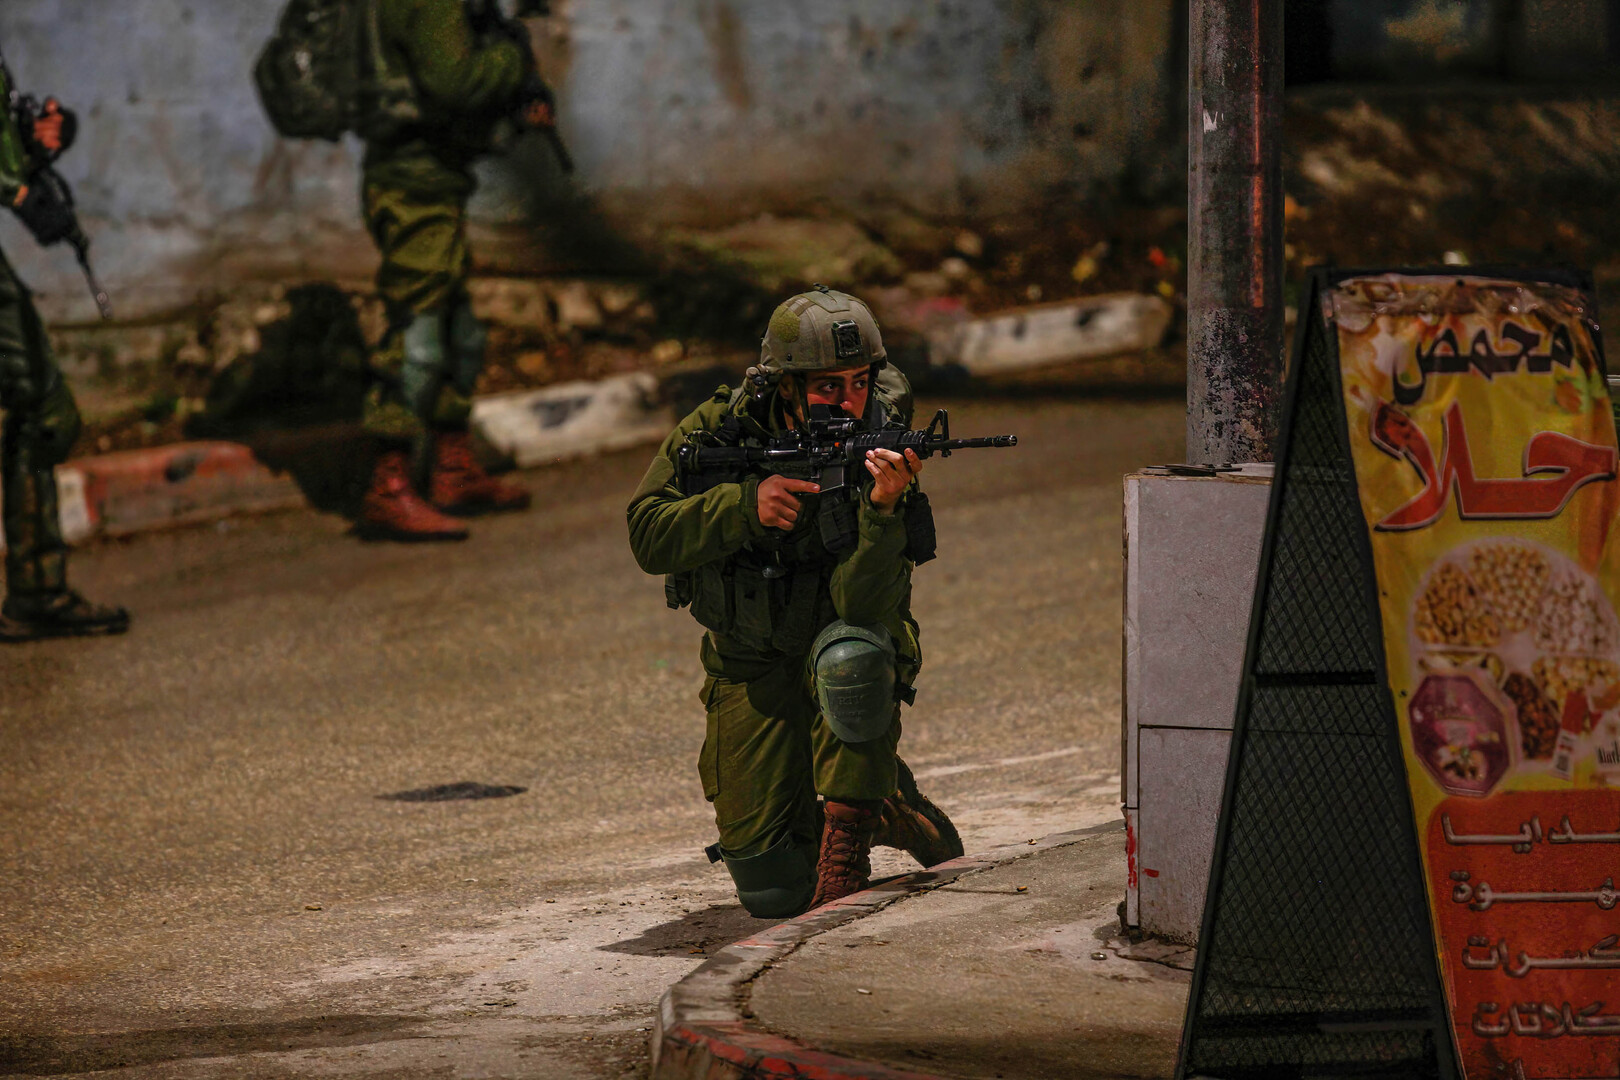 مقتل فلسطيني برصاص الشرطة الإسرائيلية في بلدة كفر ياسيف